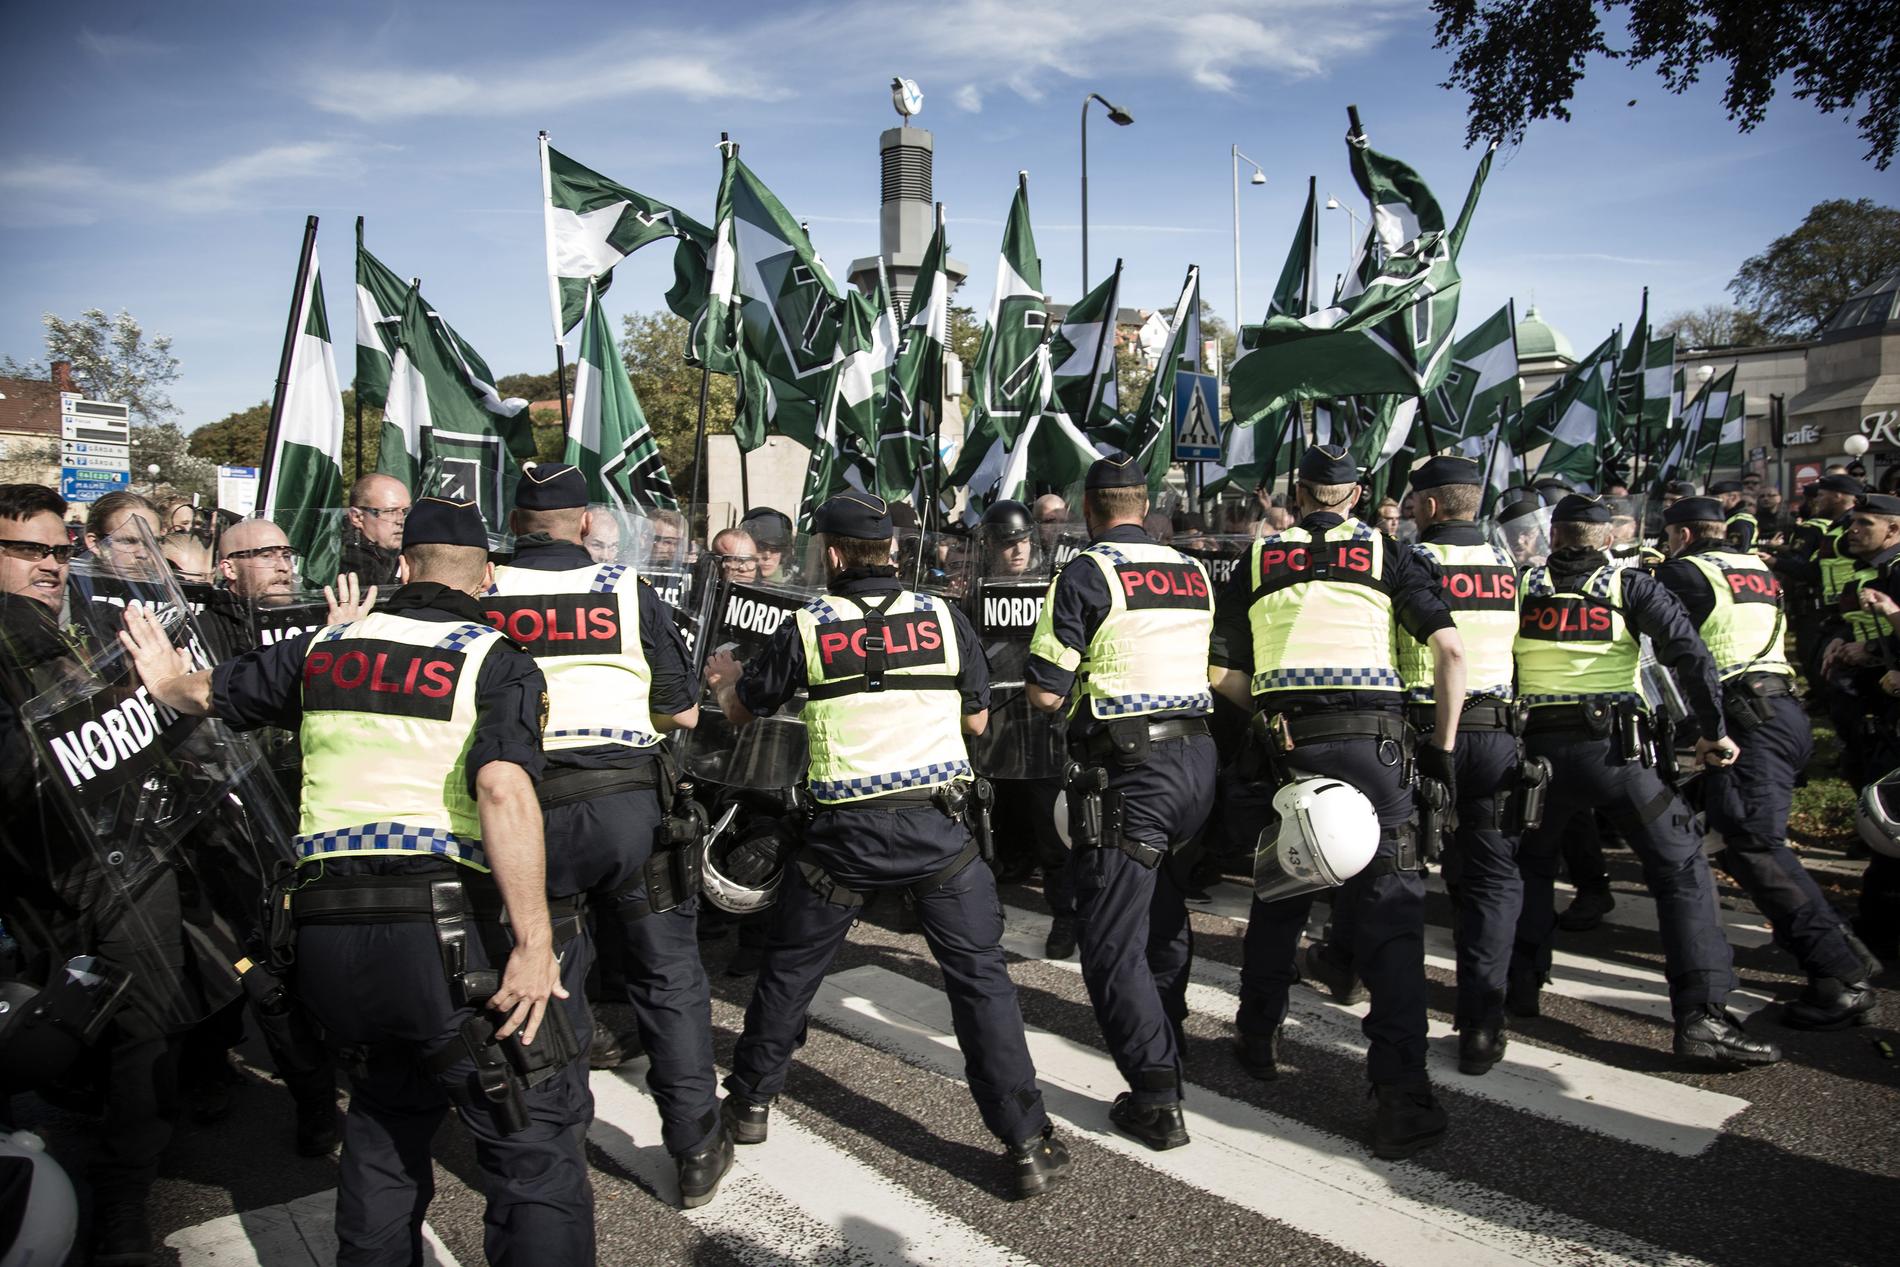 Nordiska motståndsrörelsens demonstrationer ger uttryck för nazism och borde i sig betraktas som hets mot folkgrupp.